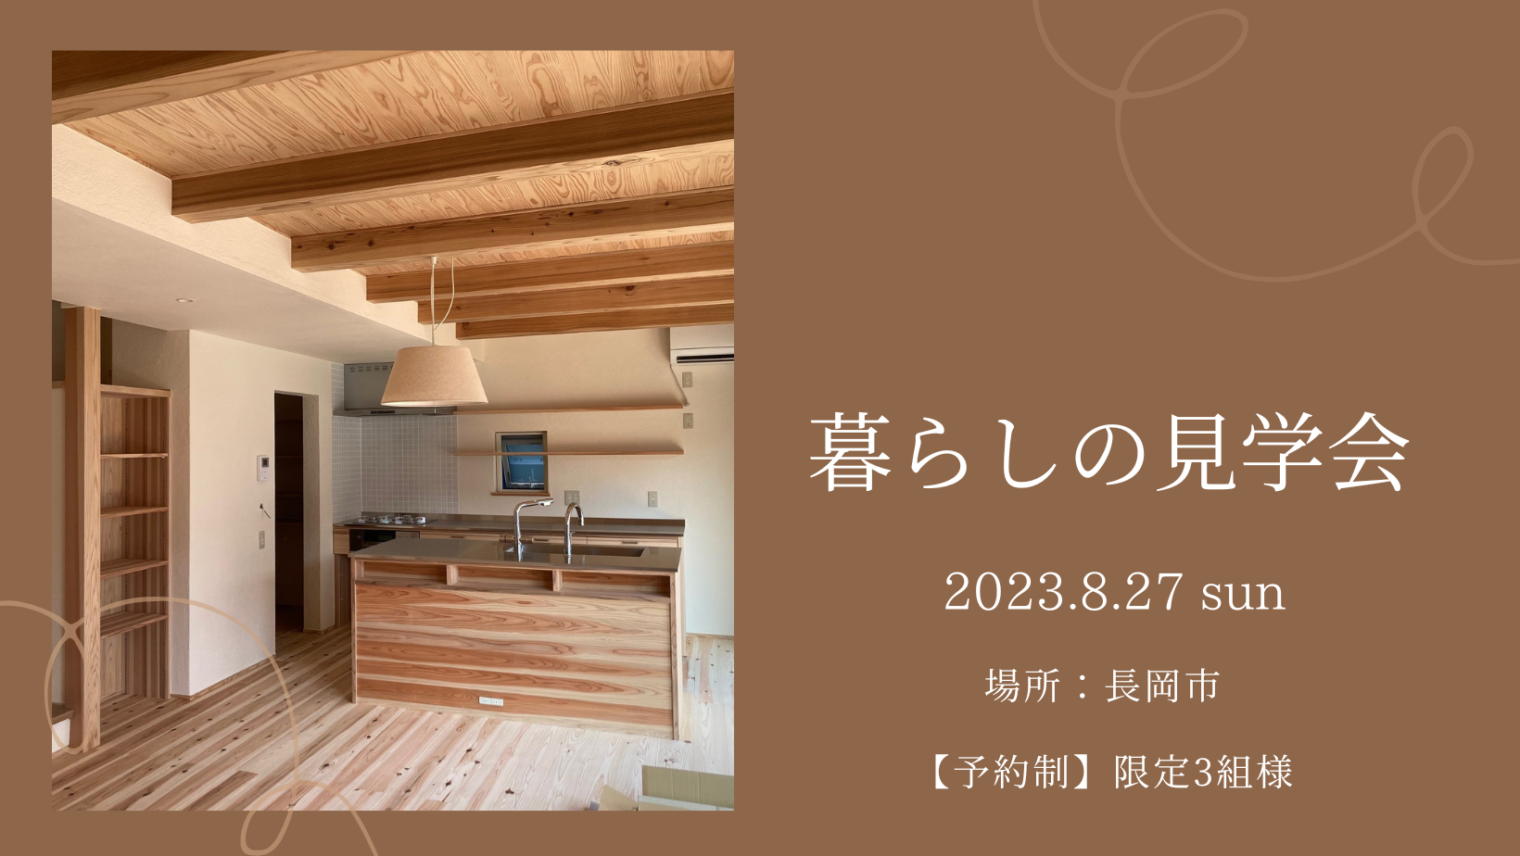 築1年を迎えた長岡市「東神田の家」にて暮らしの見学会を開催